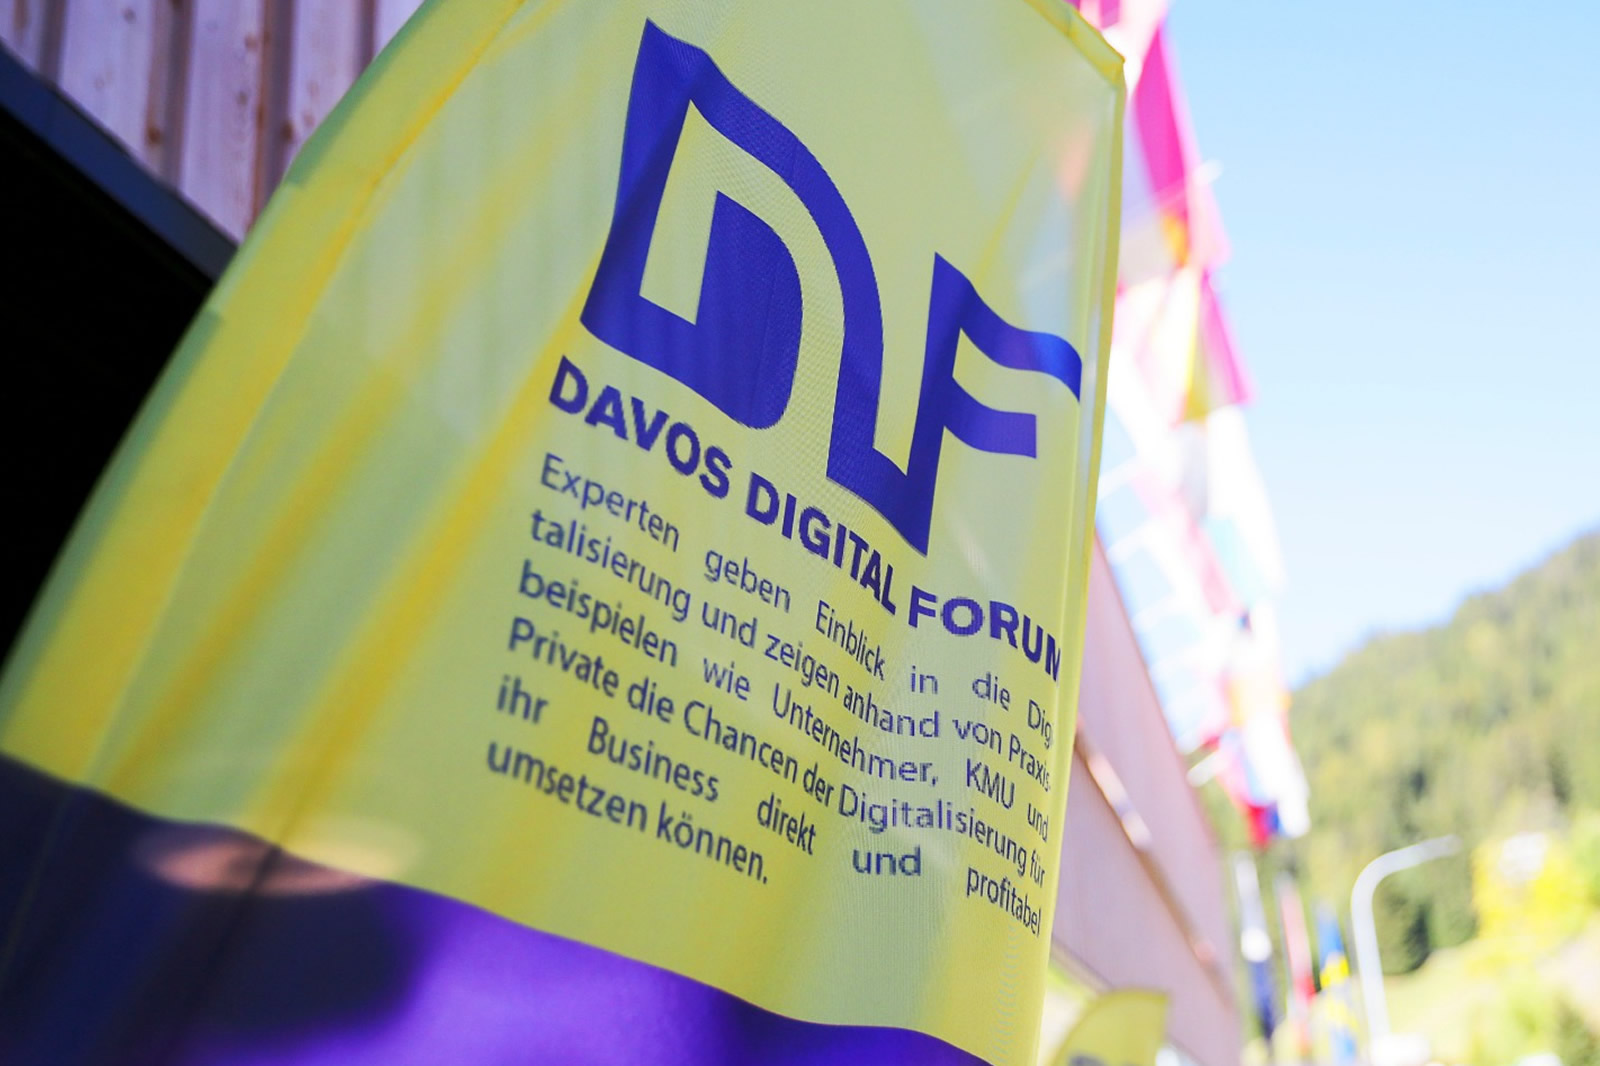 (c) Davosdigitalforum.ch